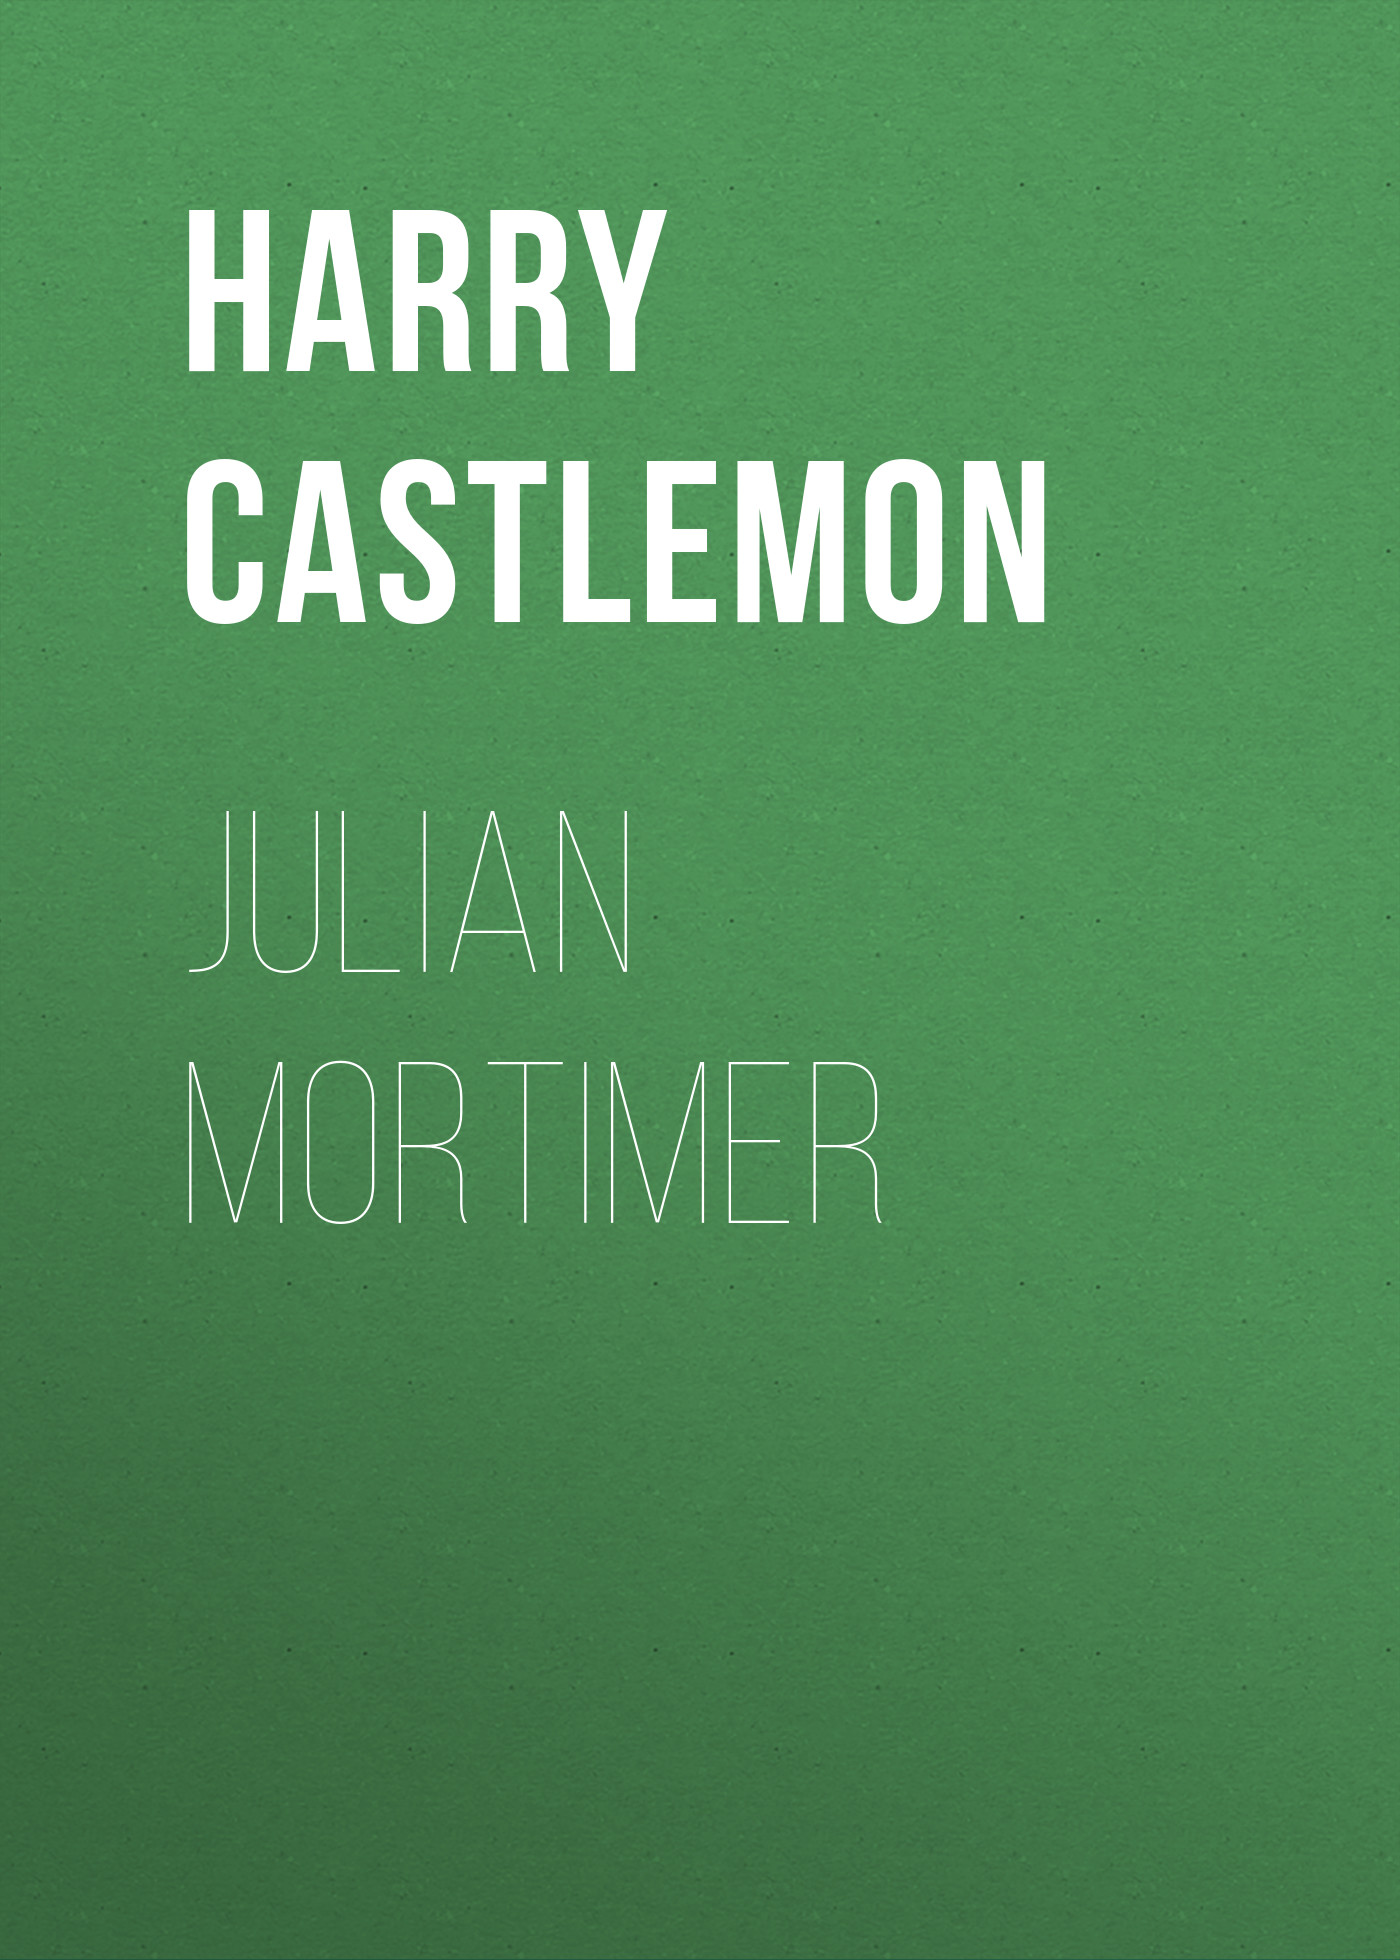 Castlemon Harry Julian Mortimer